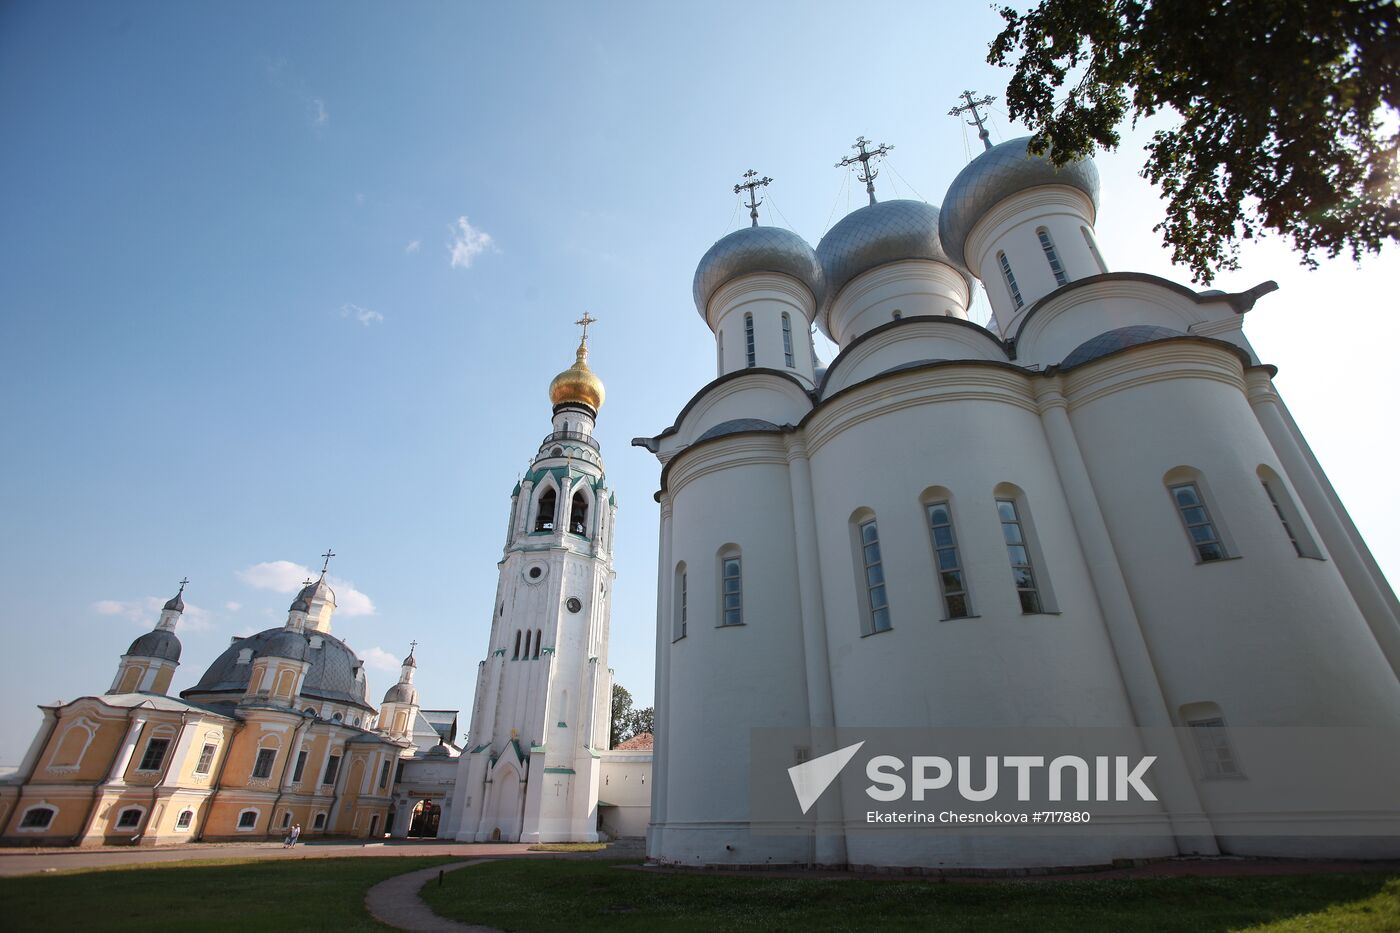 St.Sophia Cathedral in Vologda